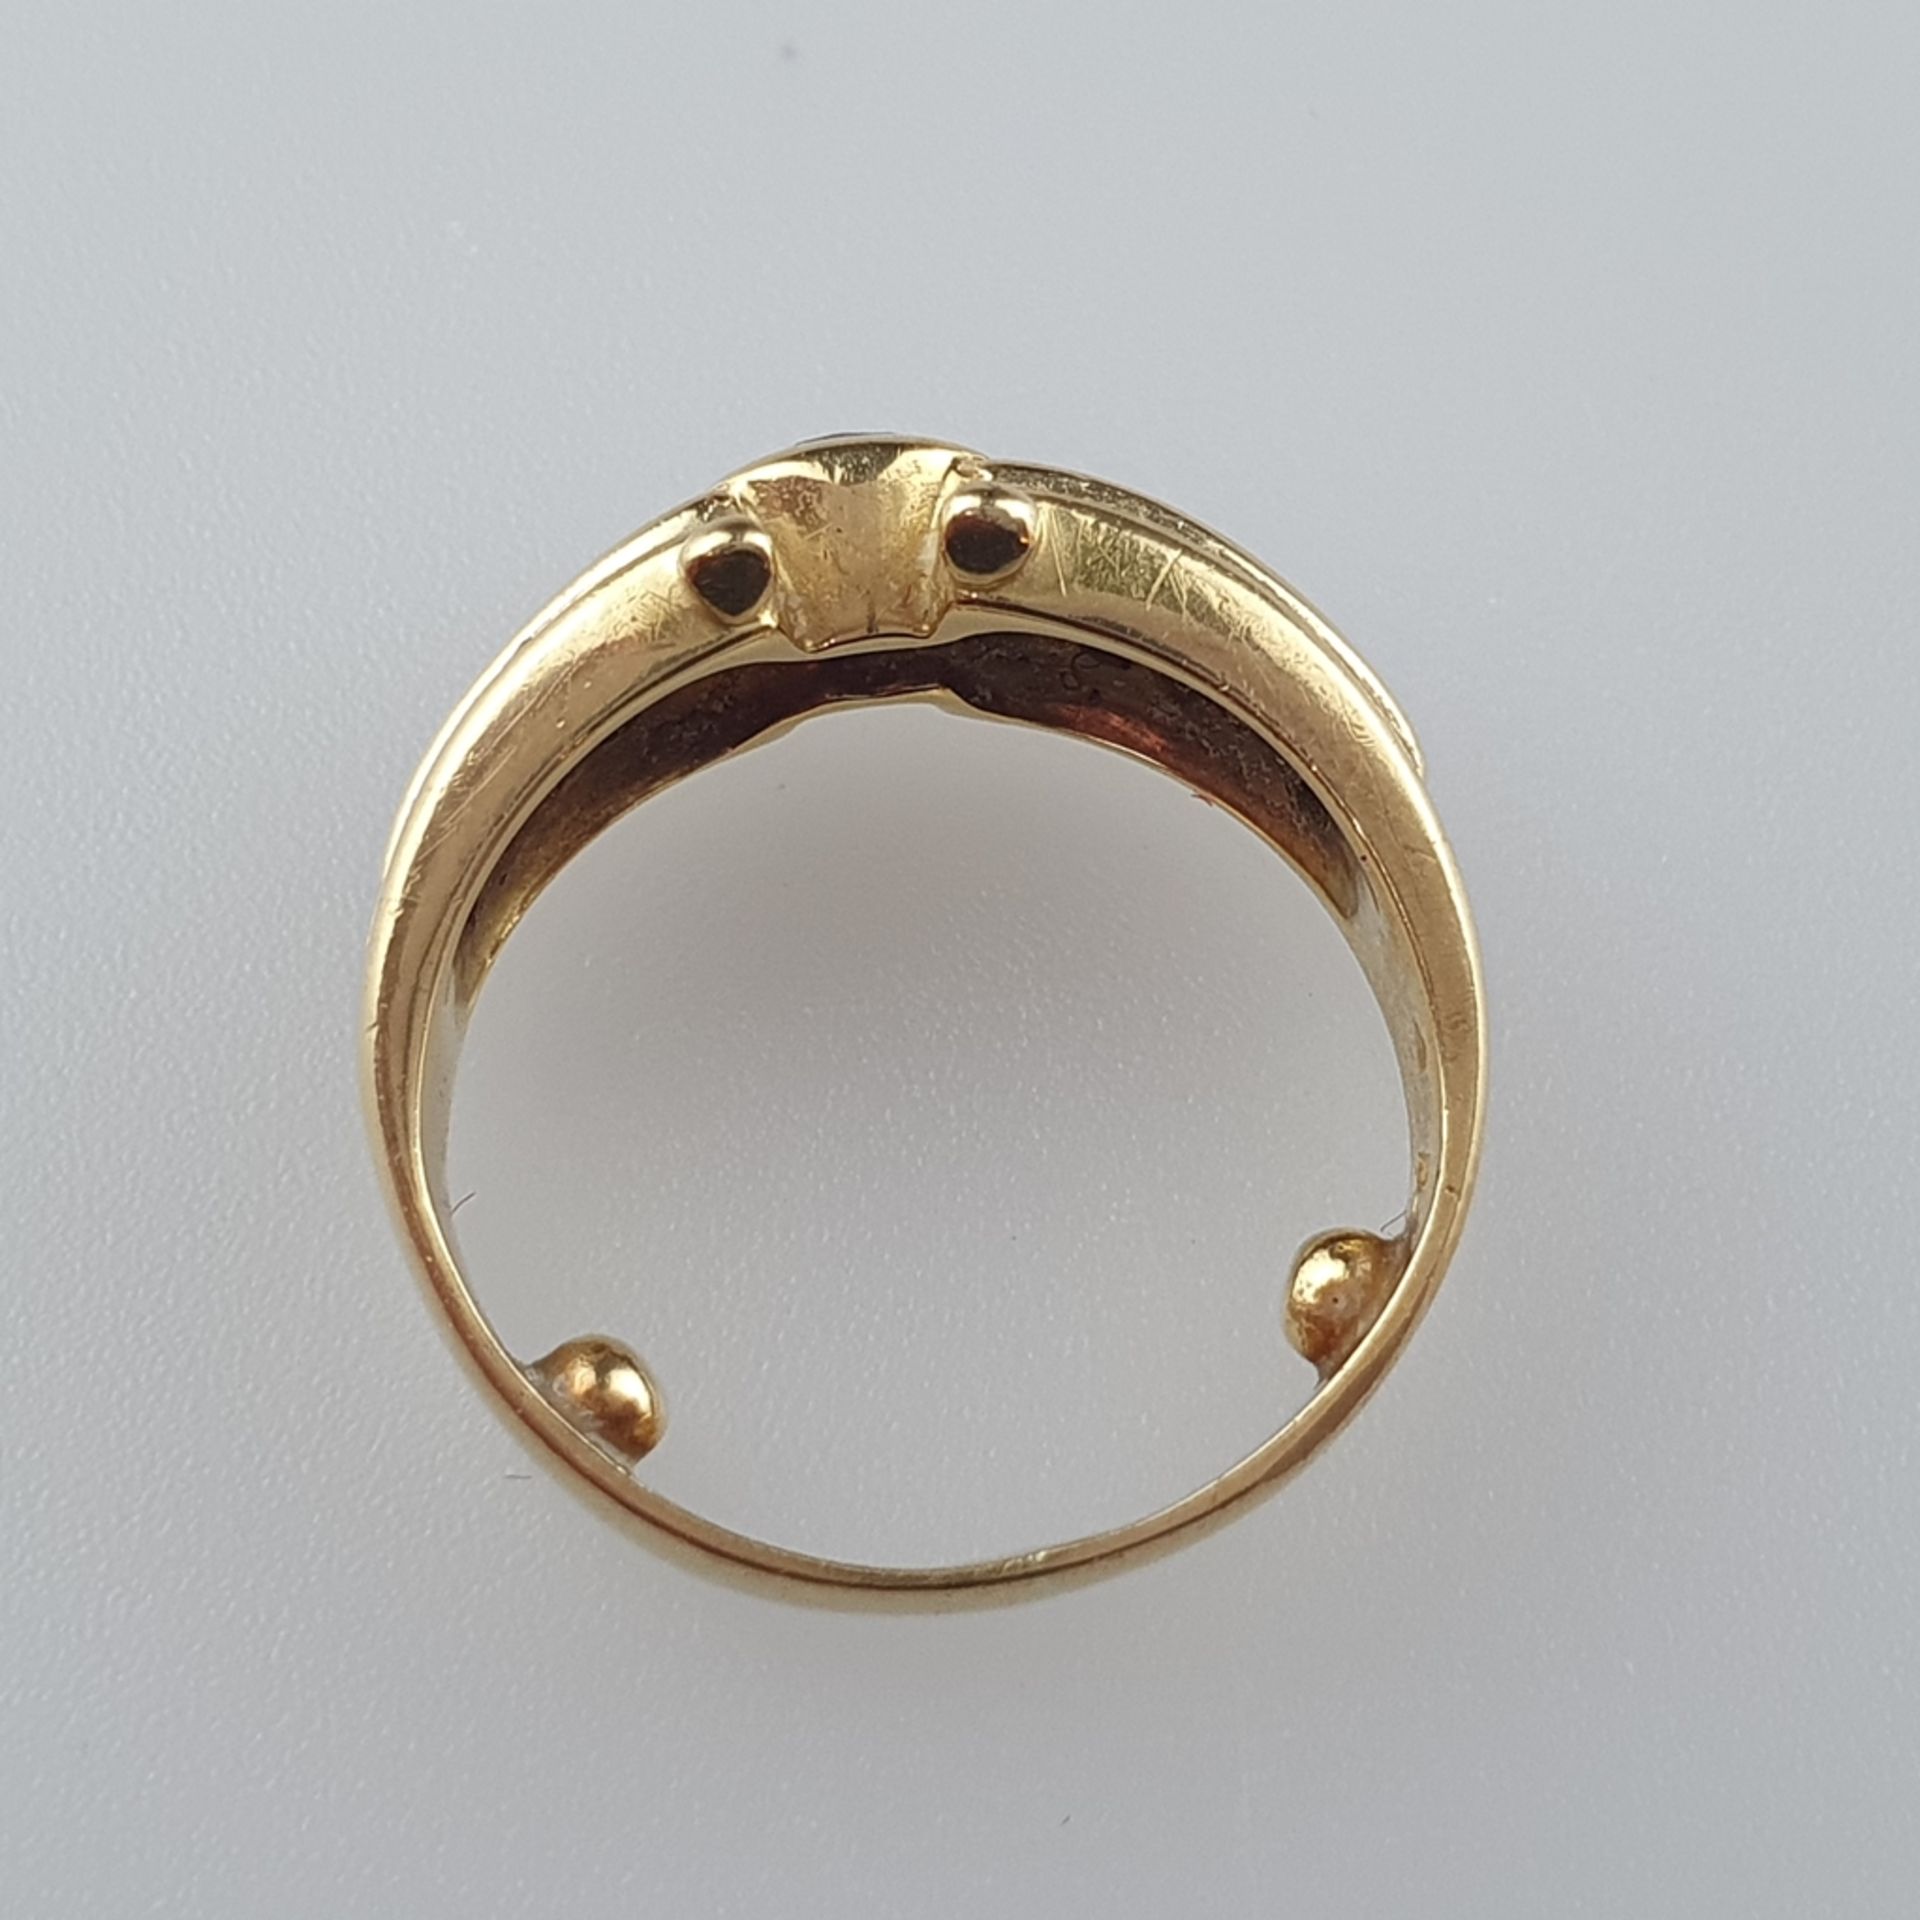 Diamantring - Gelbgold 750/000, gestempelt, zentraler Brillant von ca. 0,18ct., Gewicht ca.5,1 g, R - Image 5 of 5